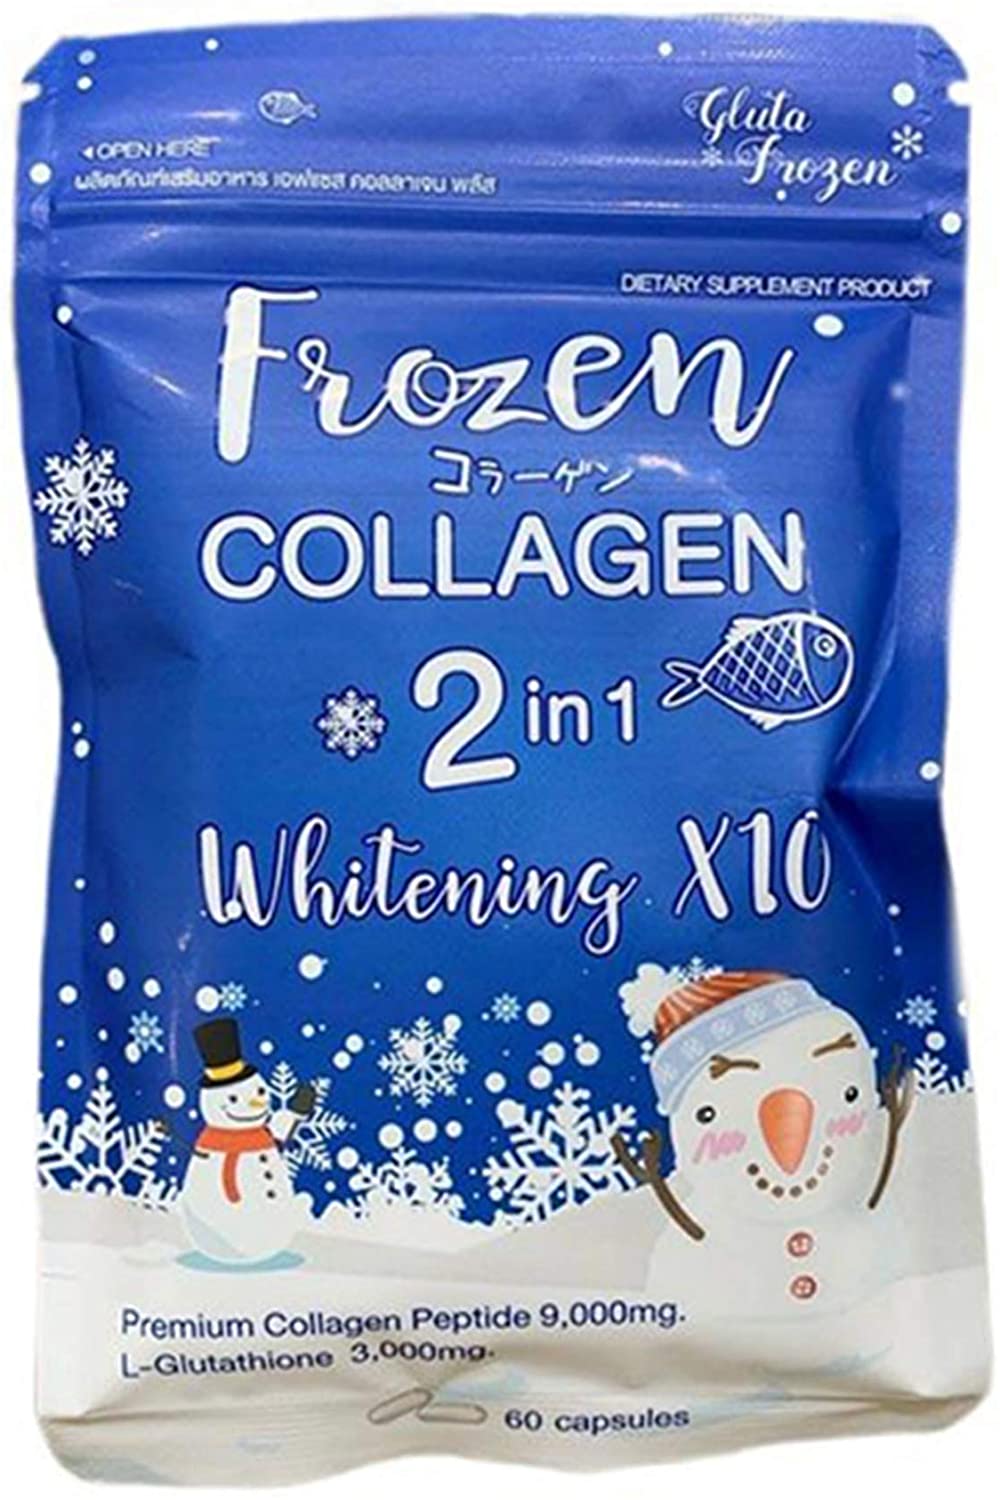 Frozen Collagen 2 in 1 Premium Collagen Peptide & Glutathione Skin Whitening Supplements - 60 Capsules